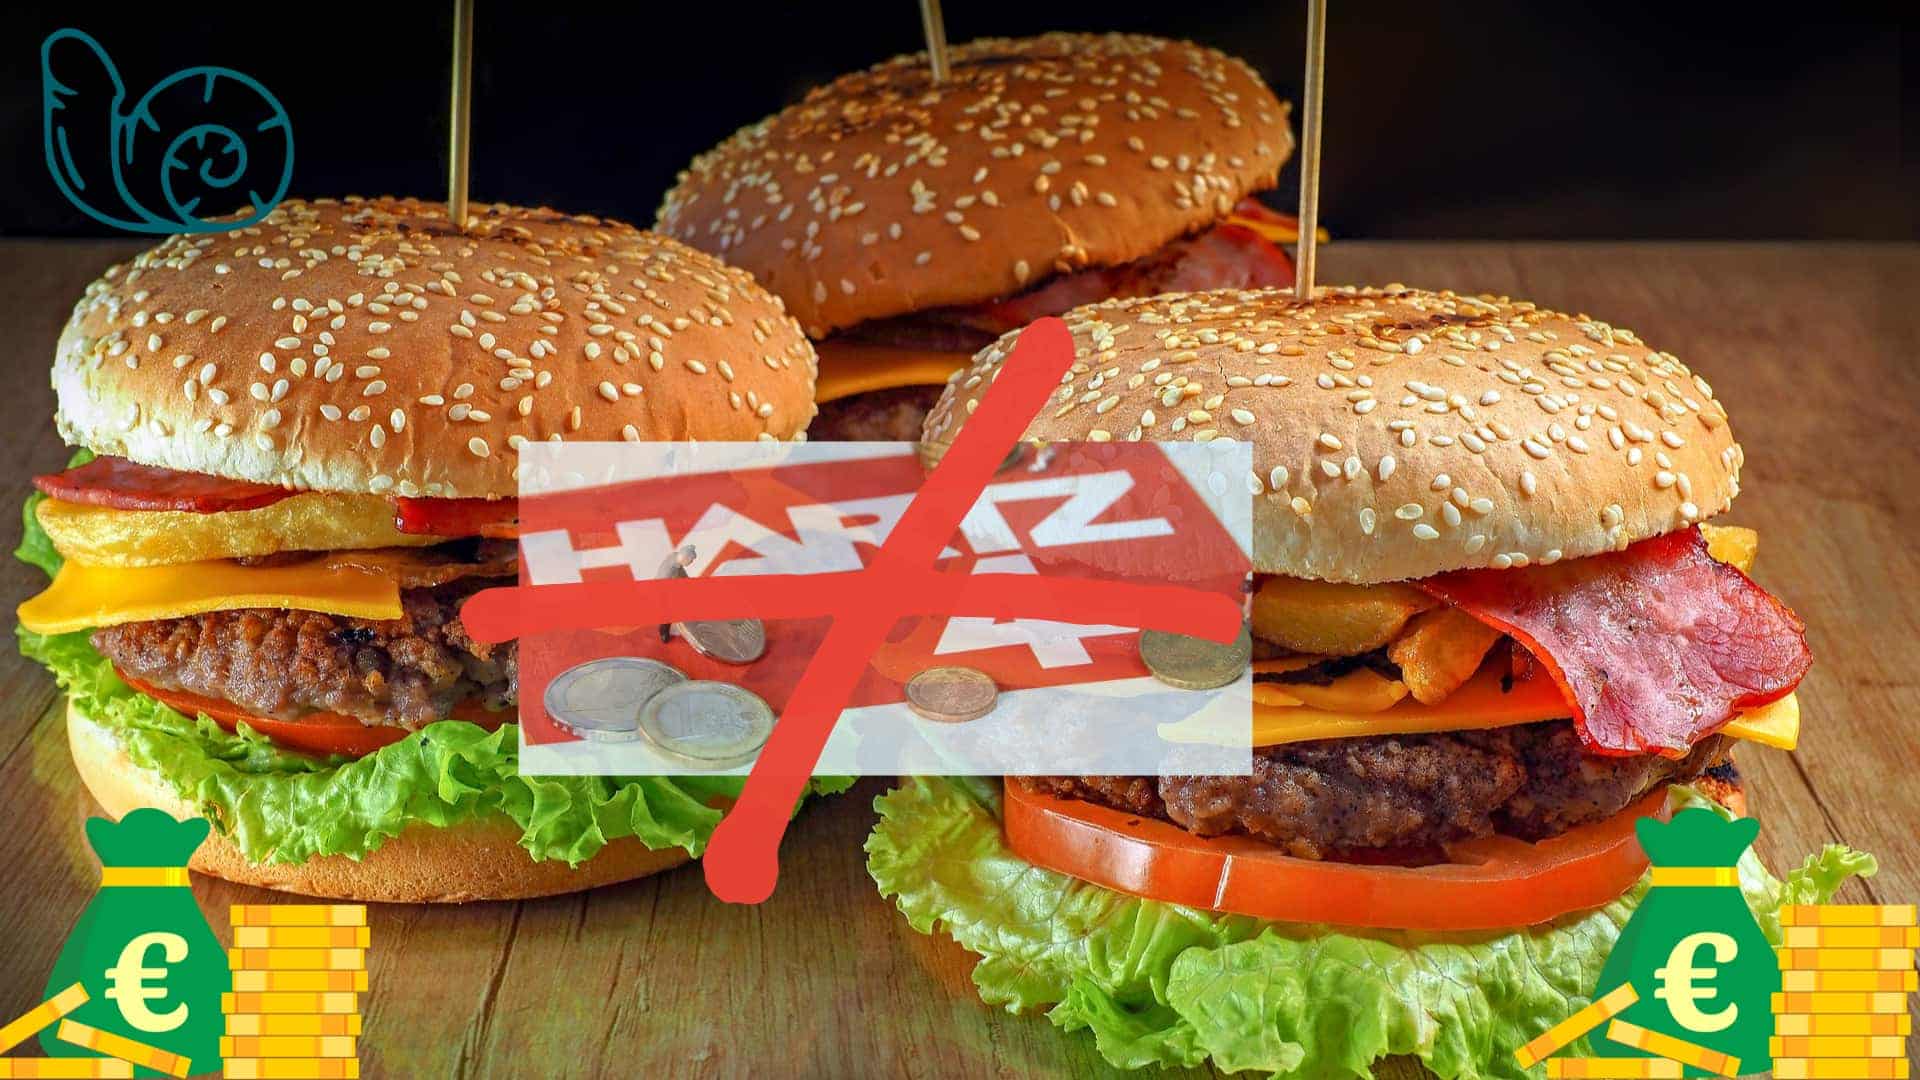 Bild für den Beitrag: Hartz-4-Nachfolger Burgergeld